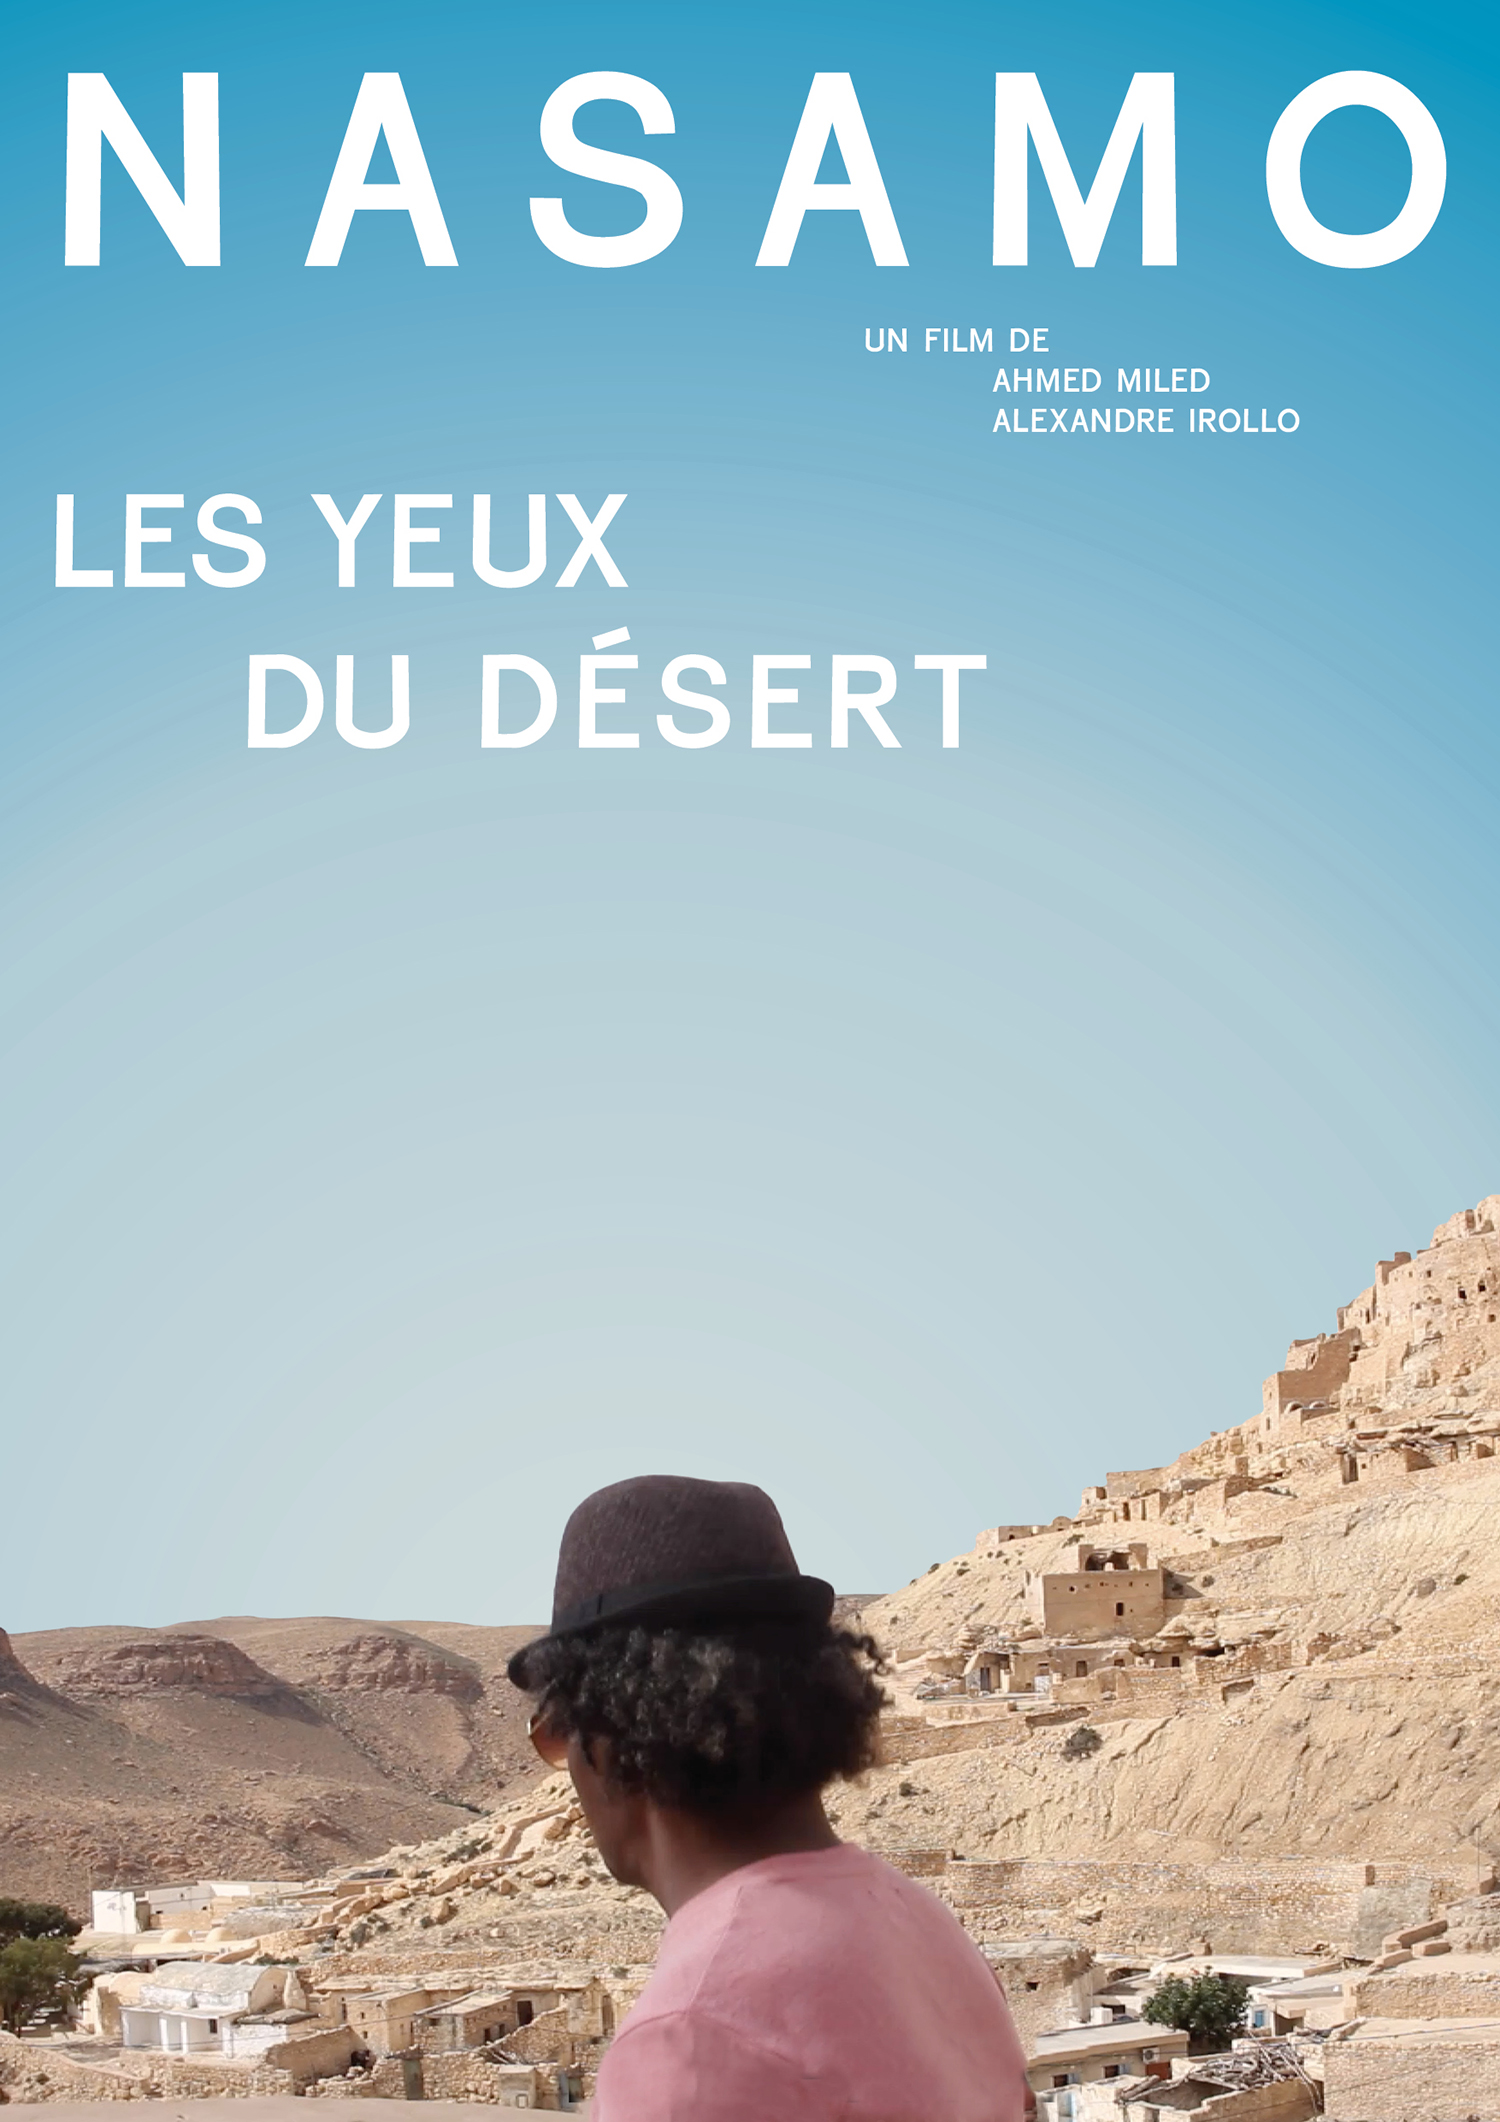 Une affiche avec un paysage désertique pour Nasamo